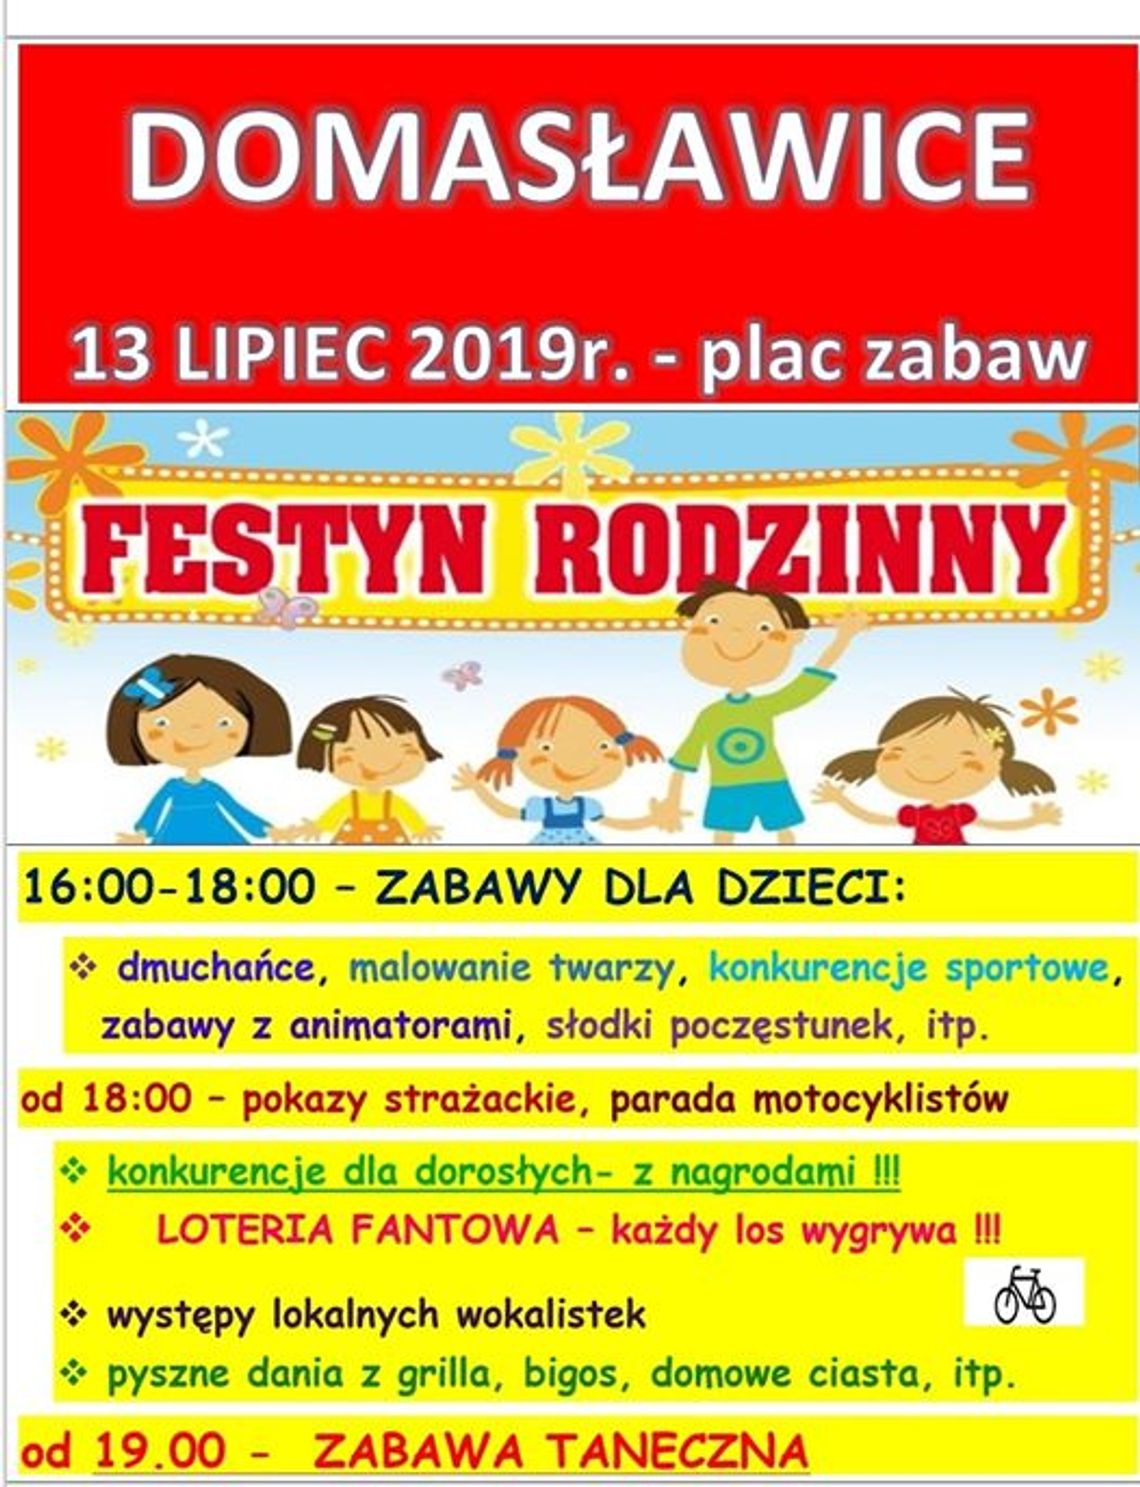 Festyn Rodzinny Domasławice